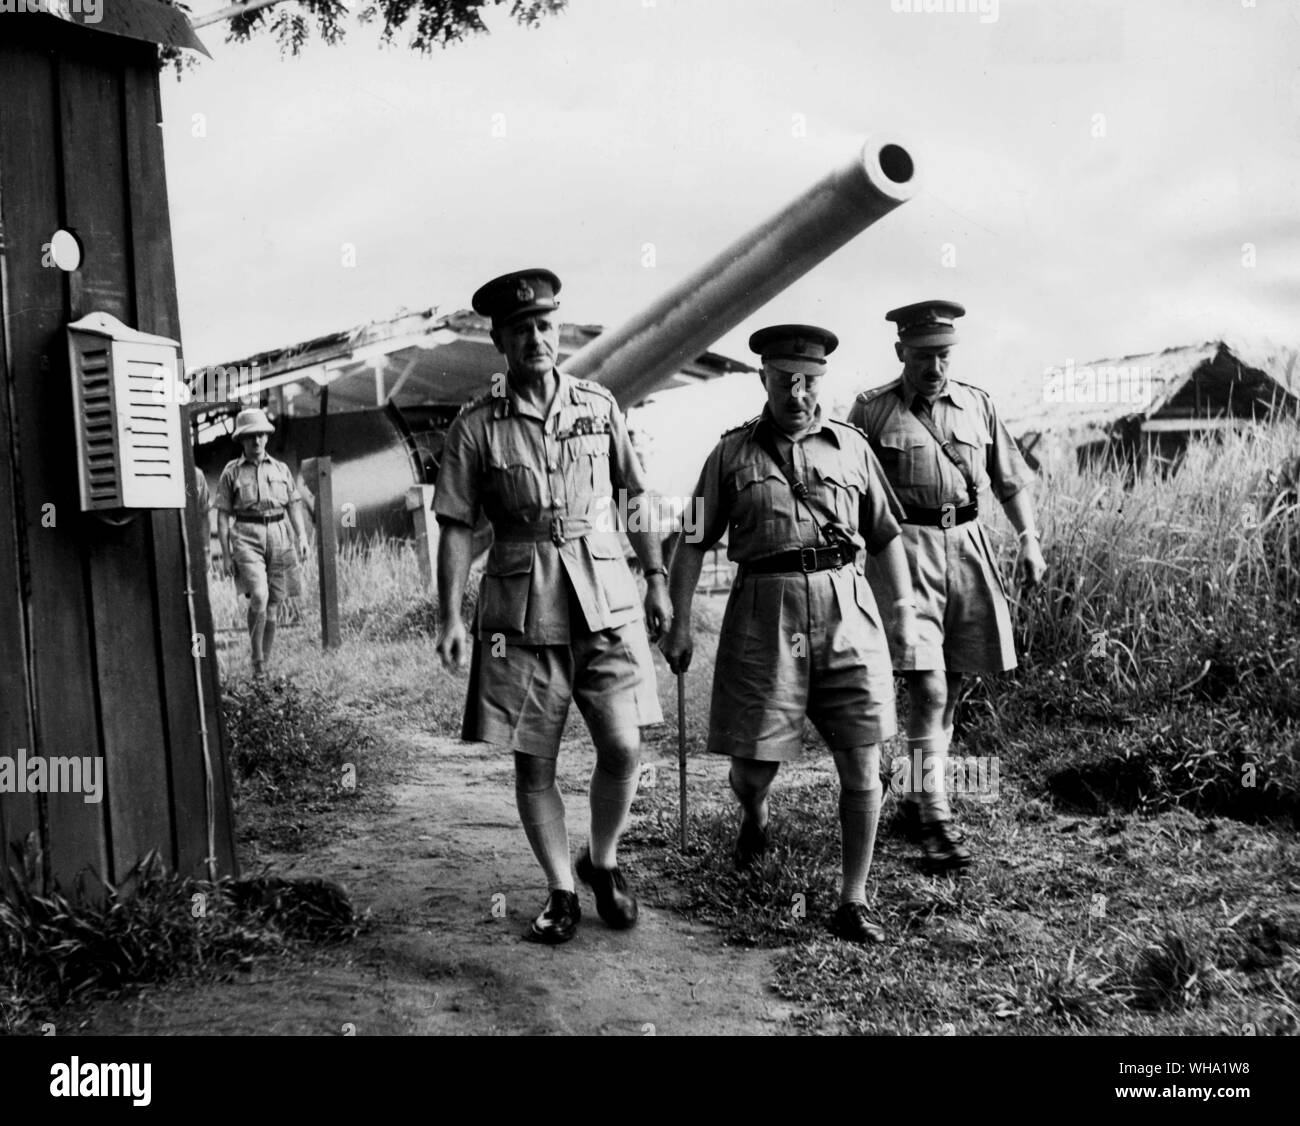 WW2: Der Fall von Singapur. Die Stadt fiel in die Japanische am 15. Februar 1942. Hier General Wavell inspiziert die Singapur Verteidigung. Wavell ist auf der linken Seite, mit Brigadier General Airtis und Kommandeur der Singapur Festung, General K. Simmons. Stockfoto